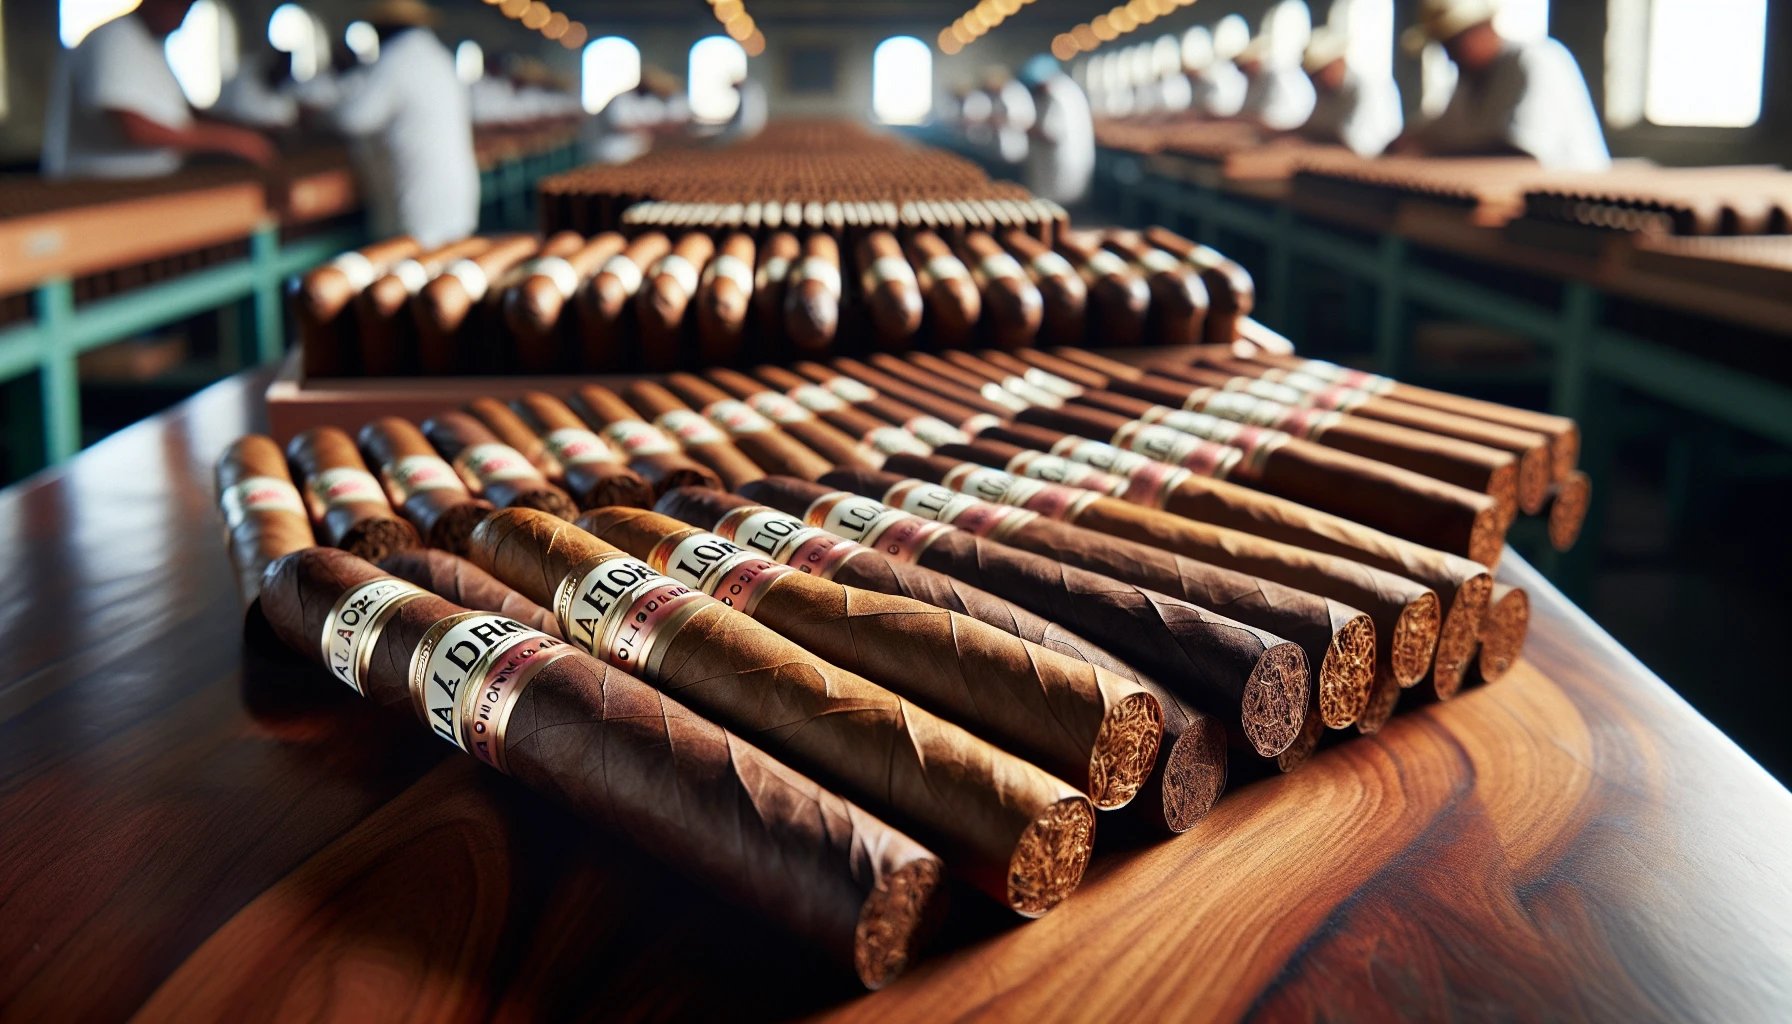 La Flor Dominicana cigar blend